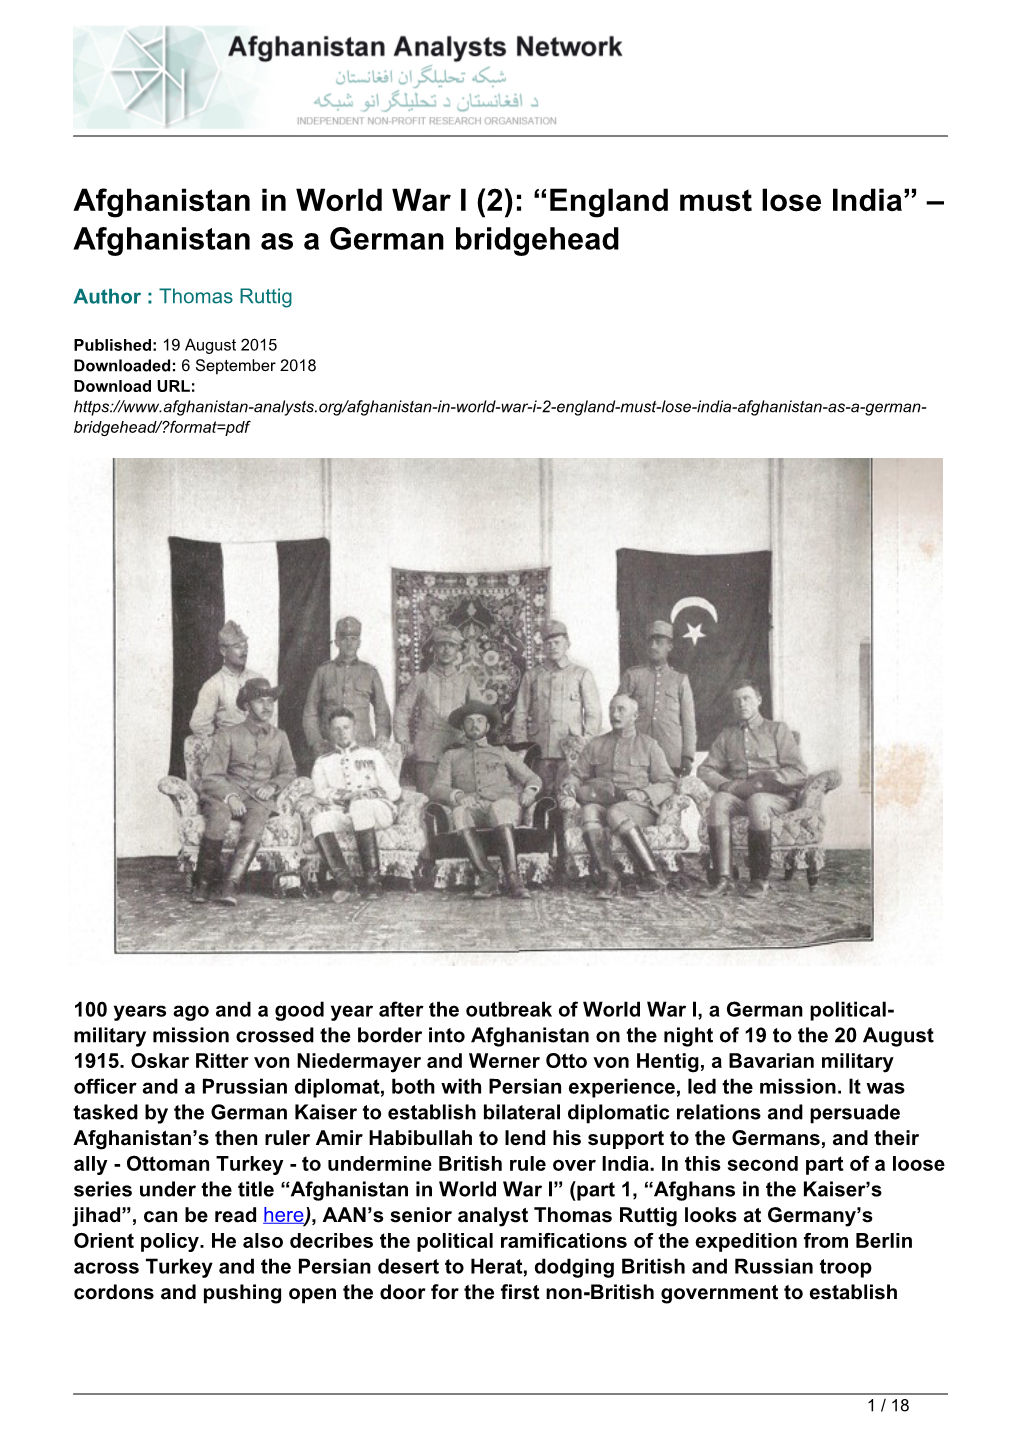 Afghanistan As a German Bridgehead